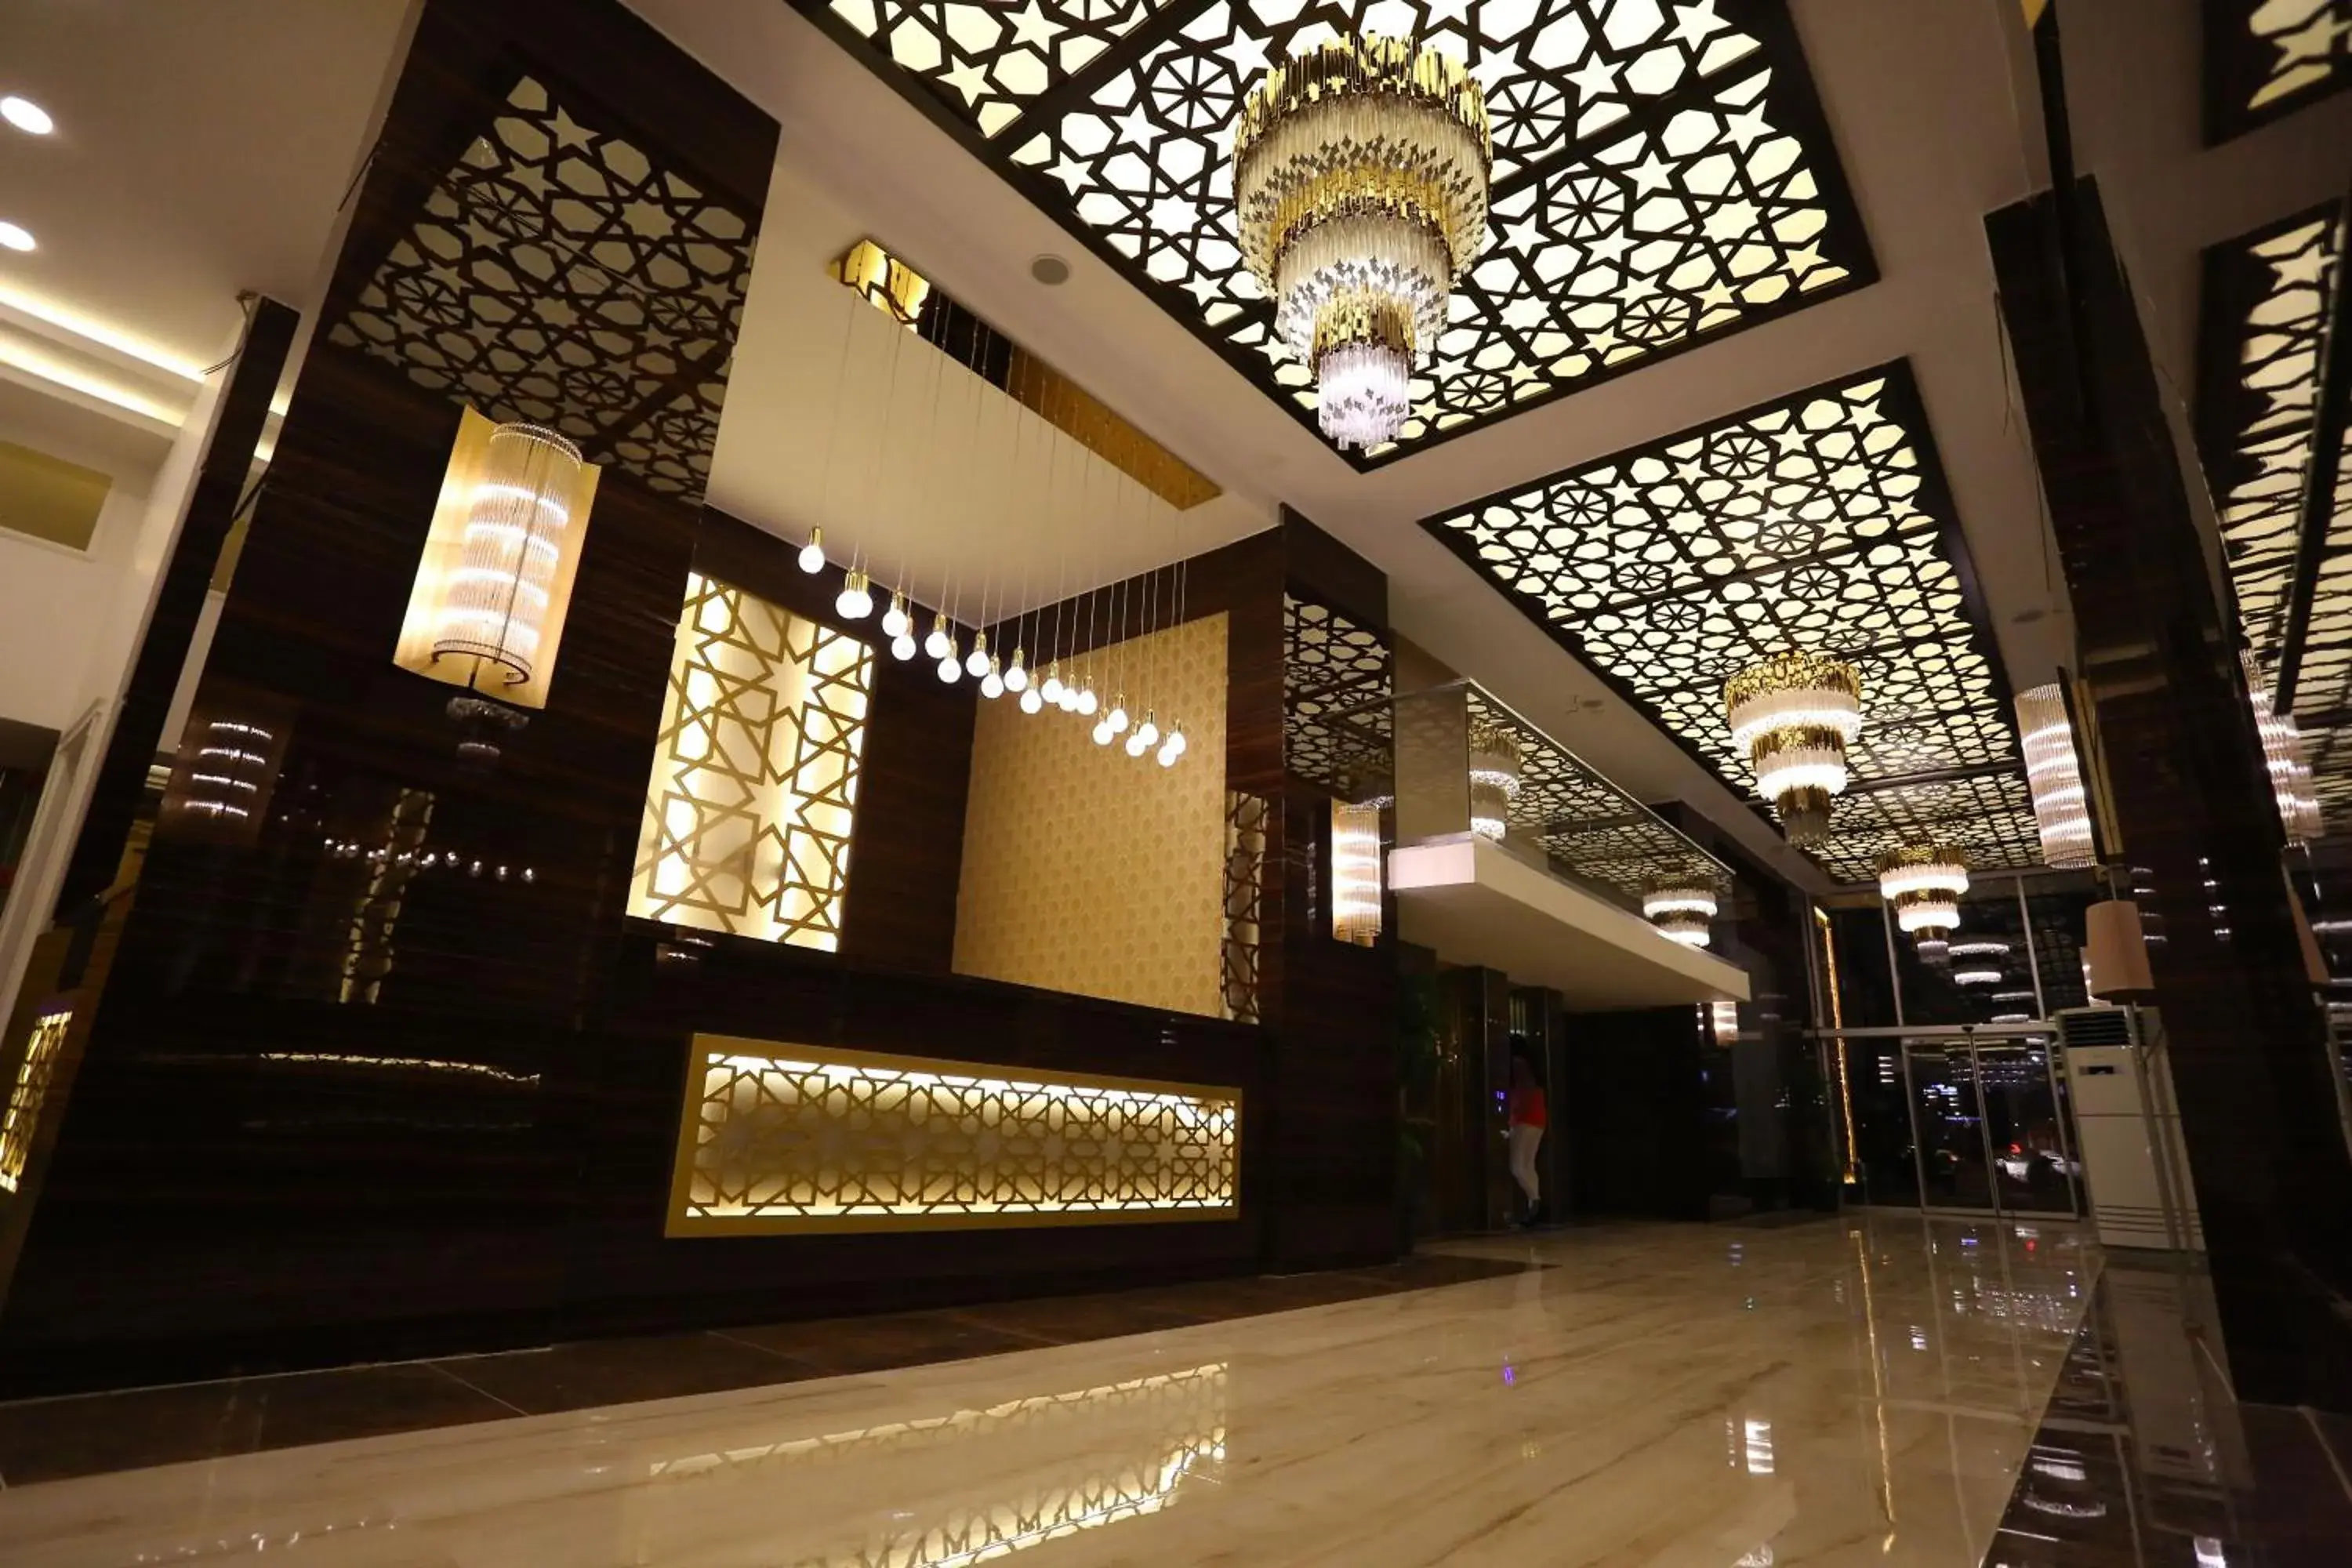 Lobby or reception in Bilgehan Hotel